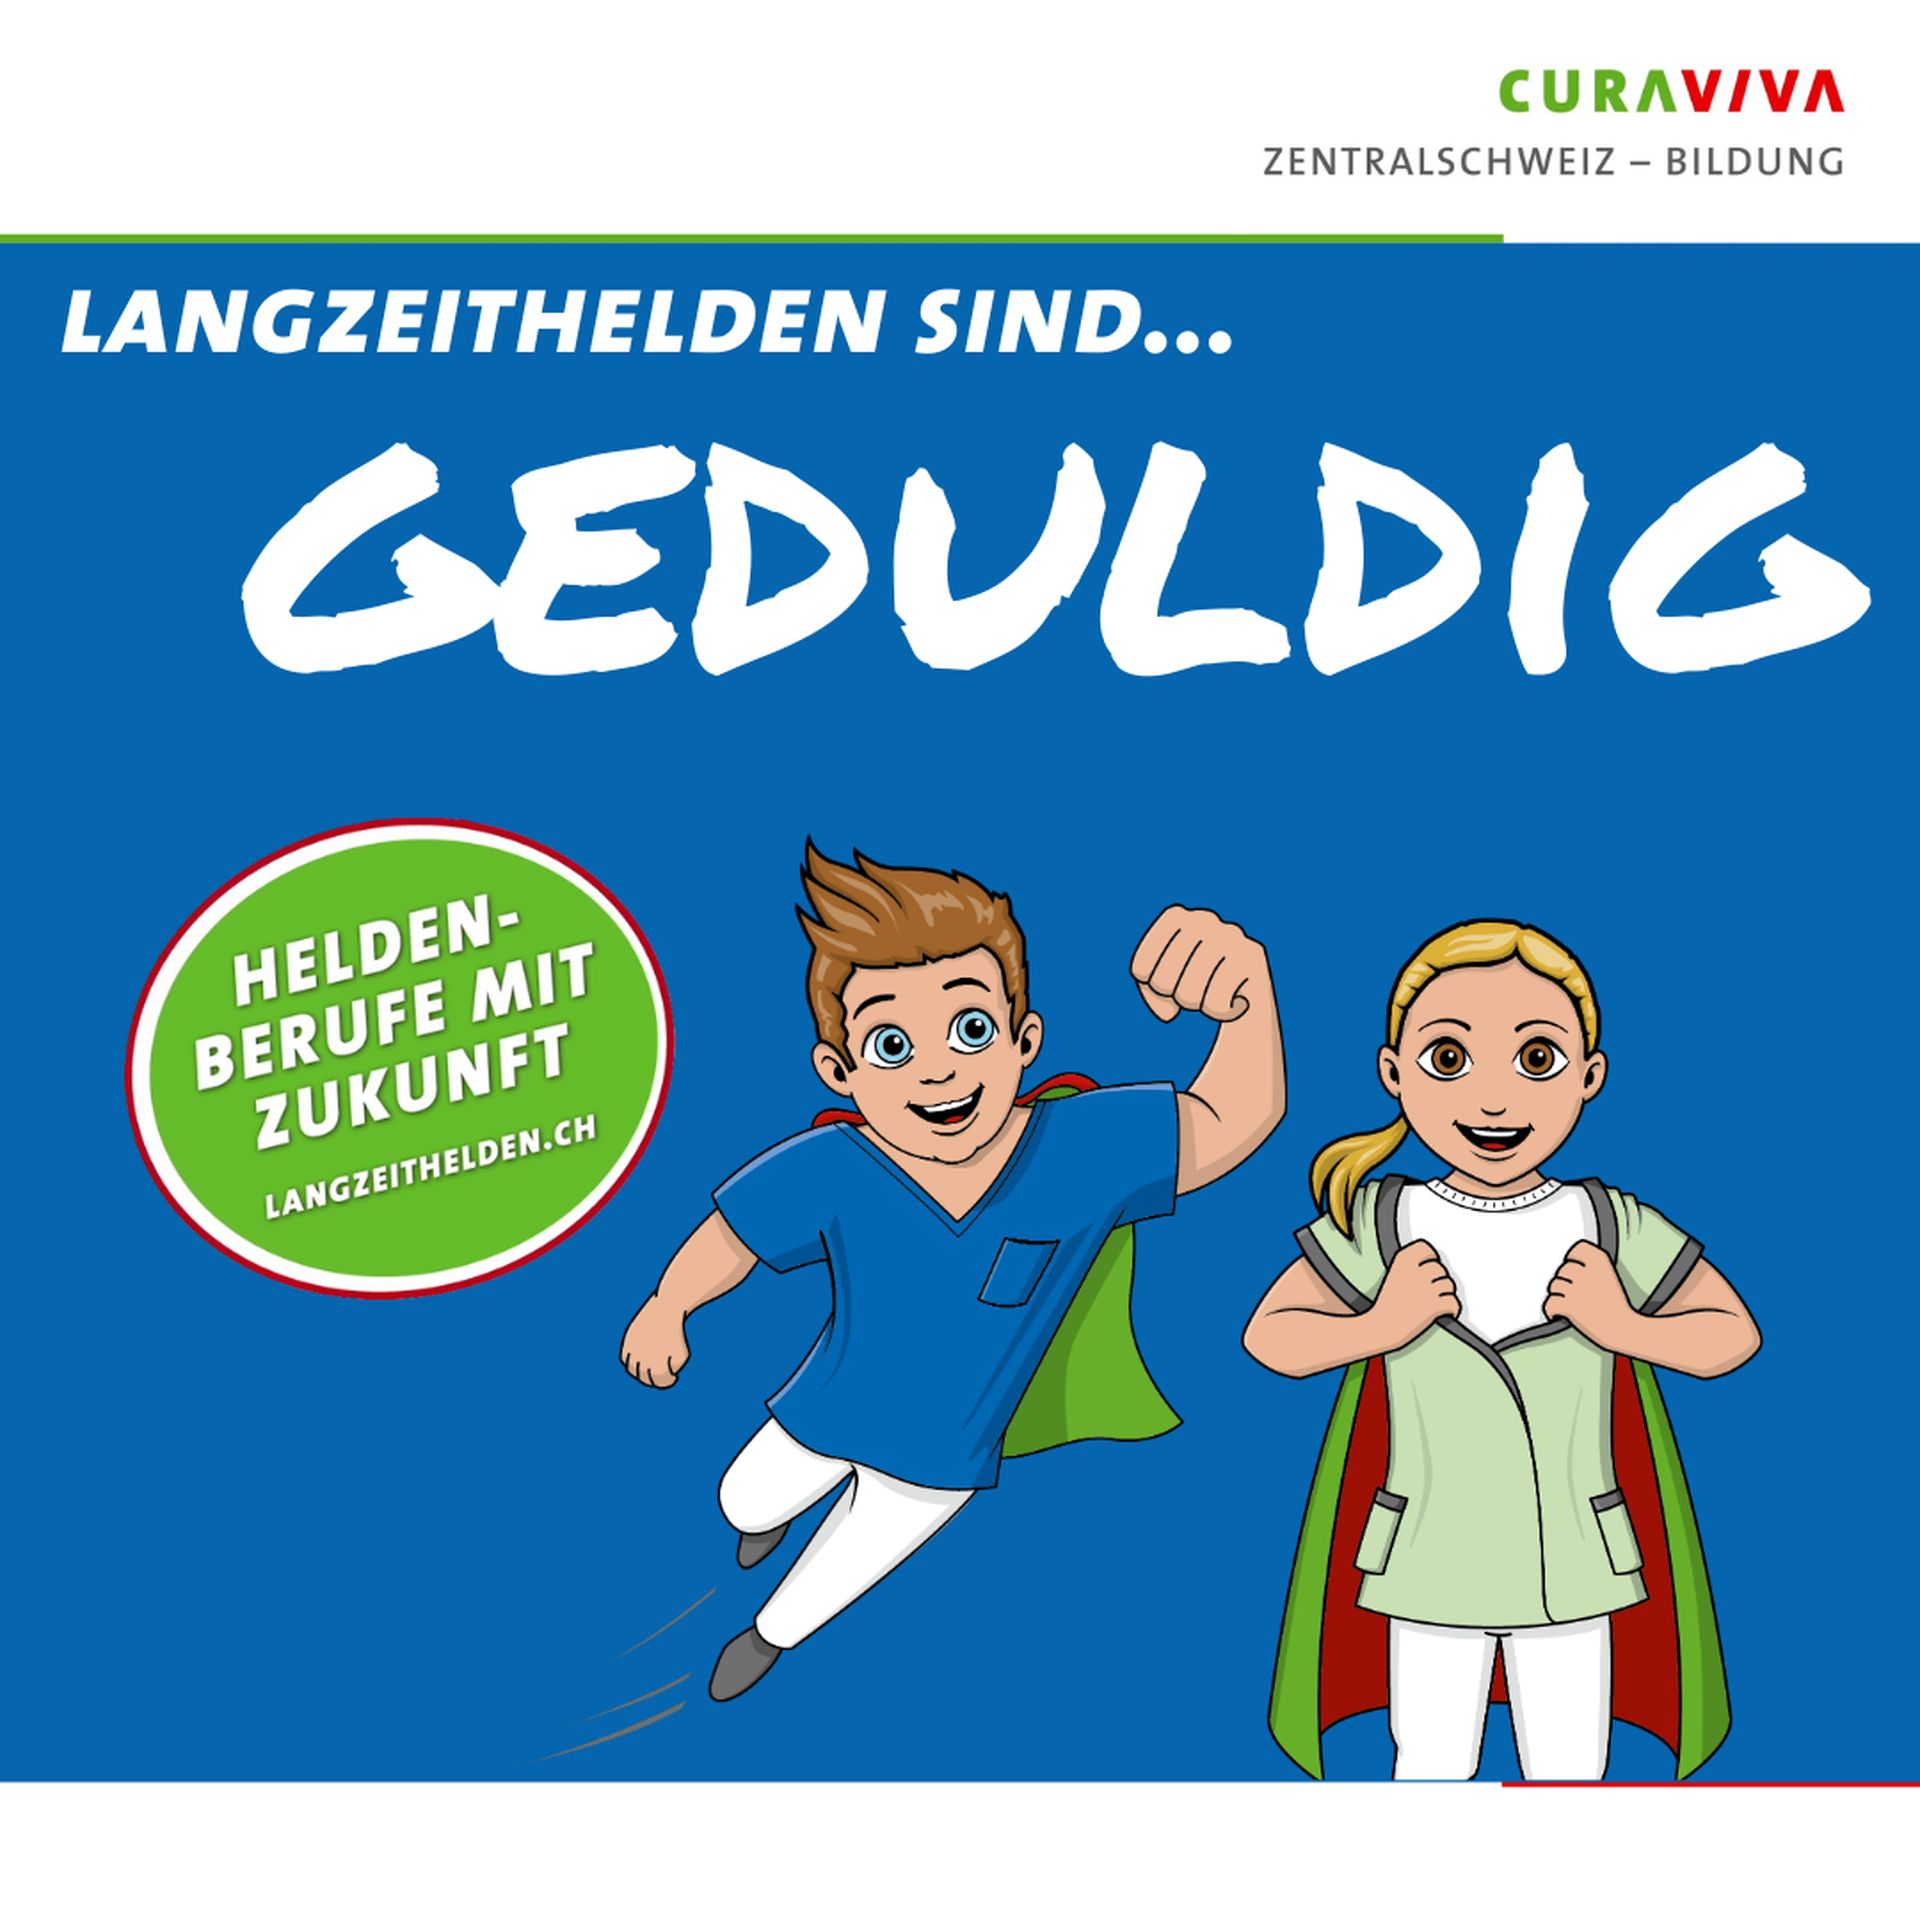 CURAVIVA Zentralschweiz – Bildung | Social Media | Kampagne Langzeithelden sind...